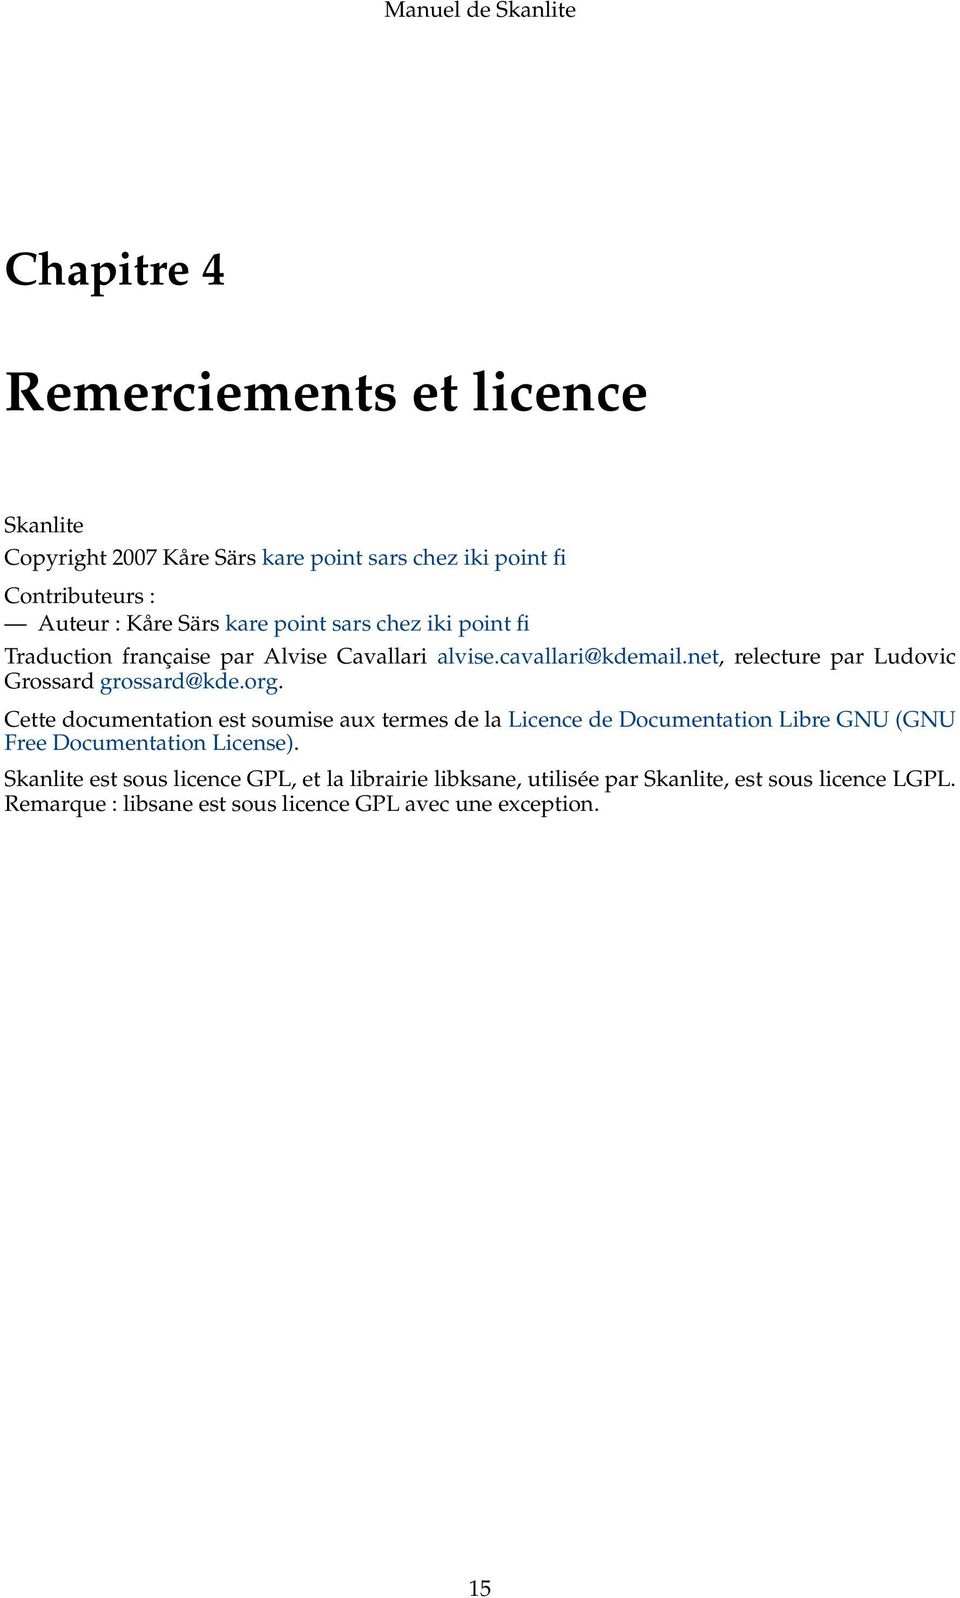 org. Cette documentation est soumise aux termes de la Licence de Documentation Libre GNU (GNU Free Documentation License).